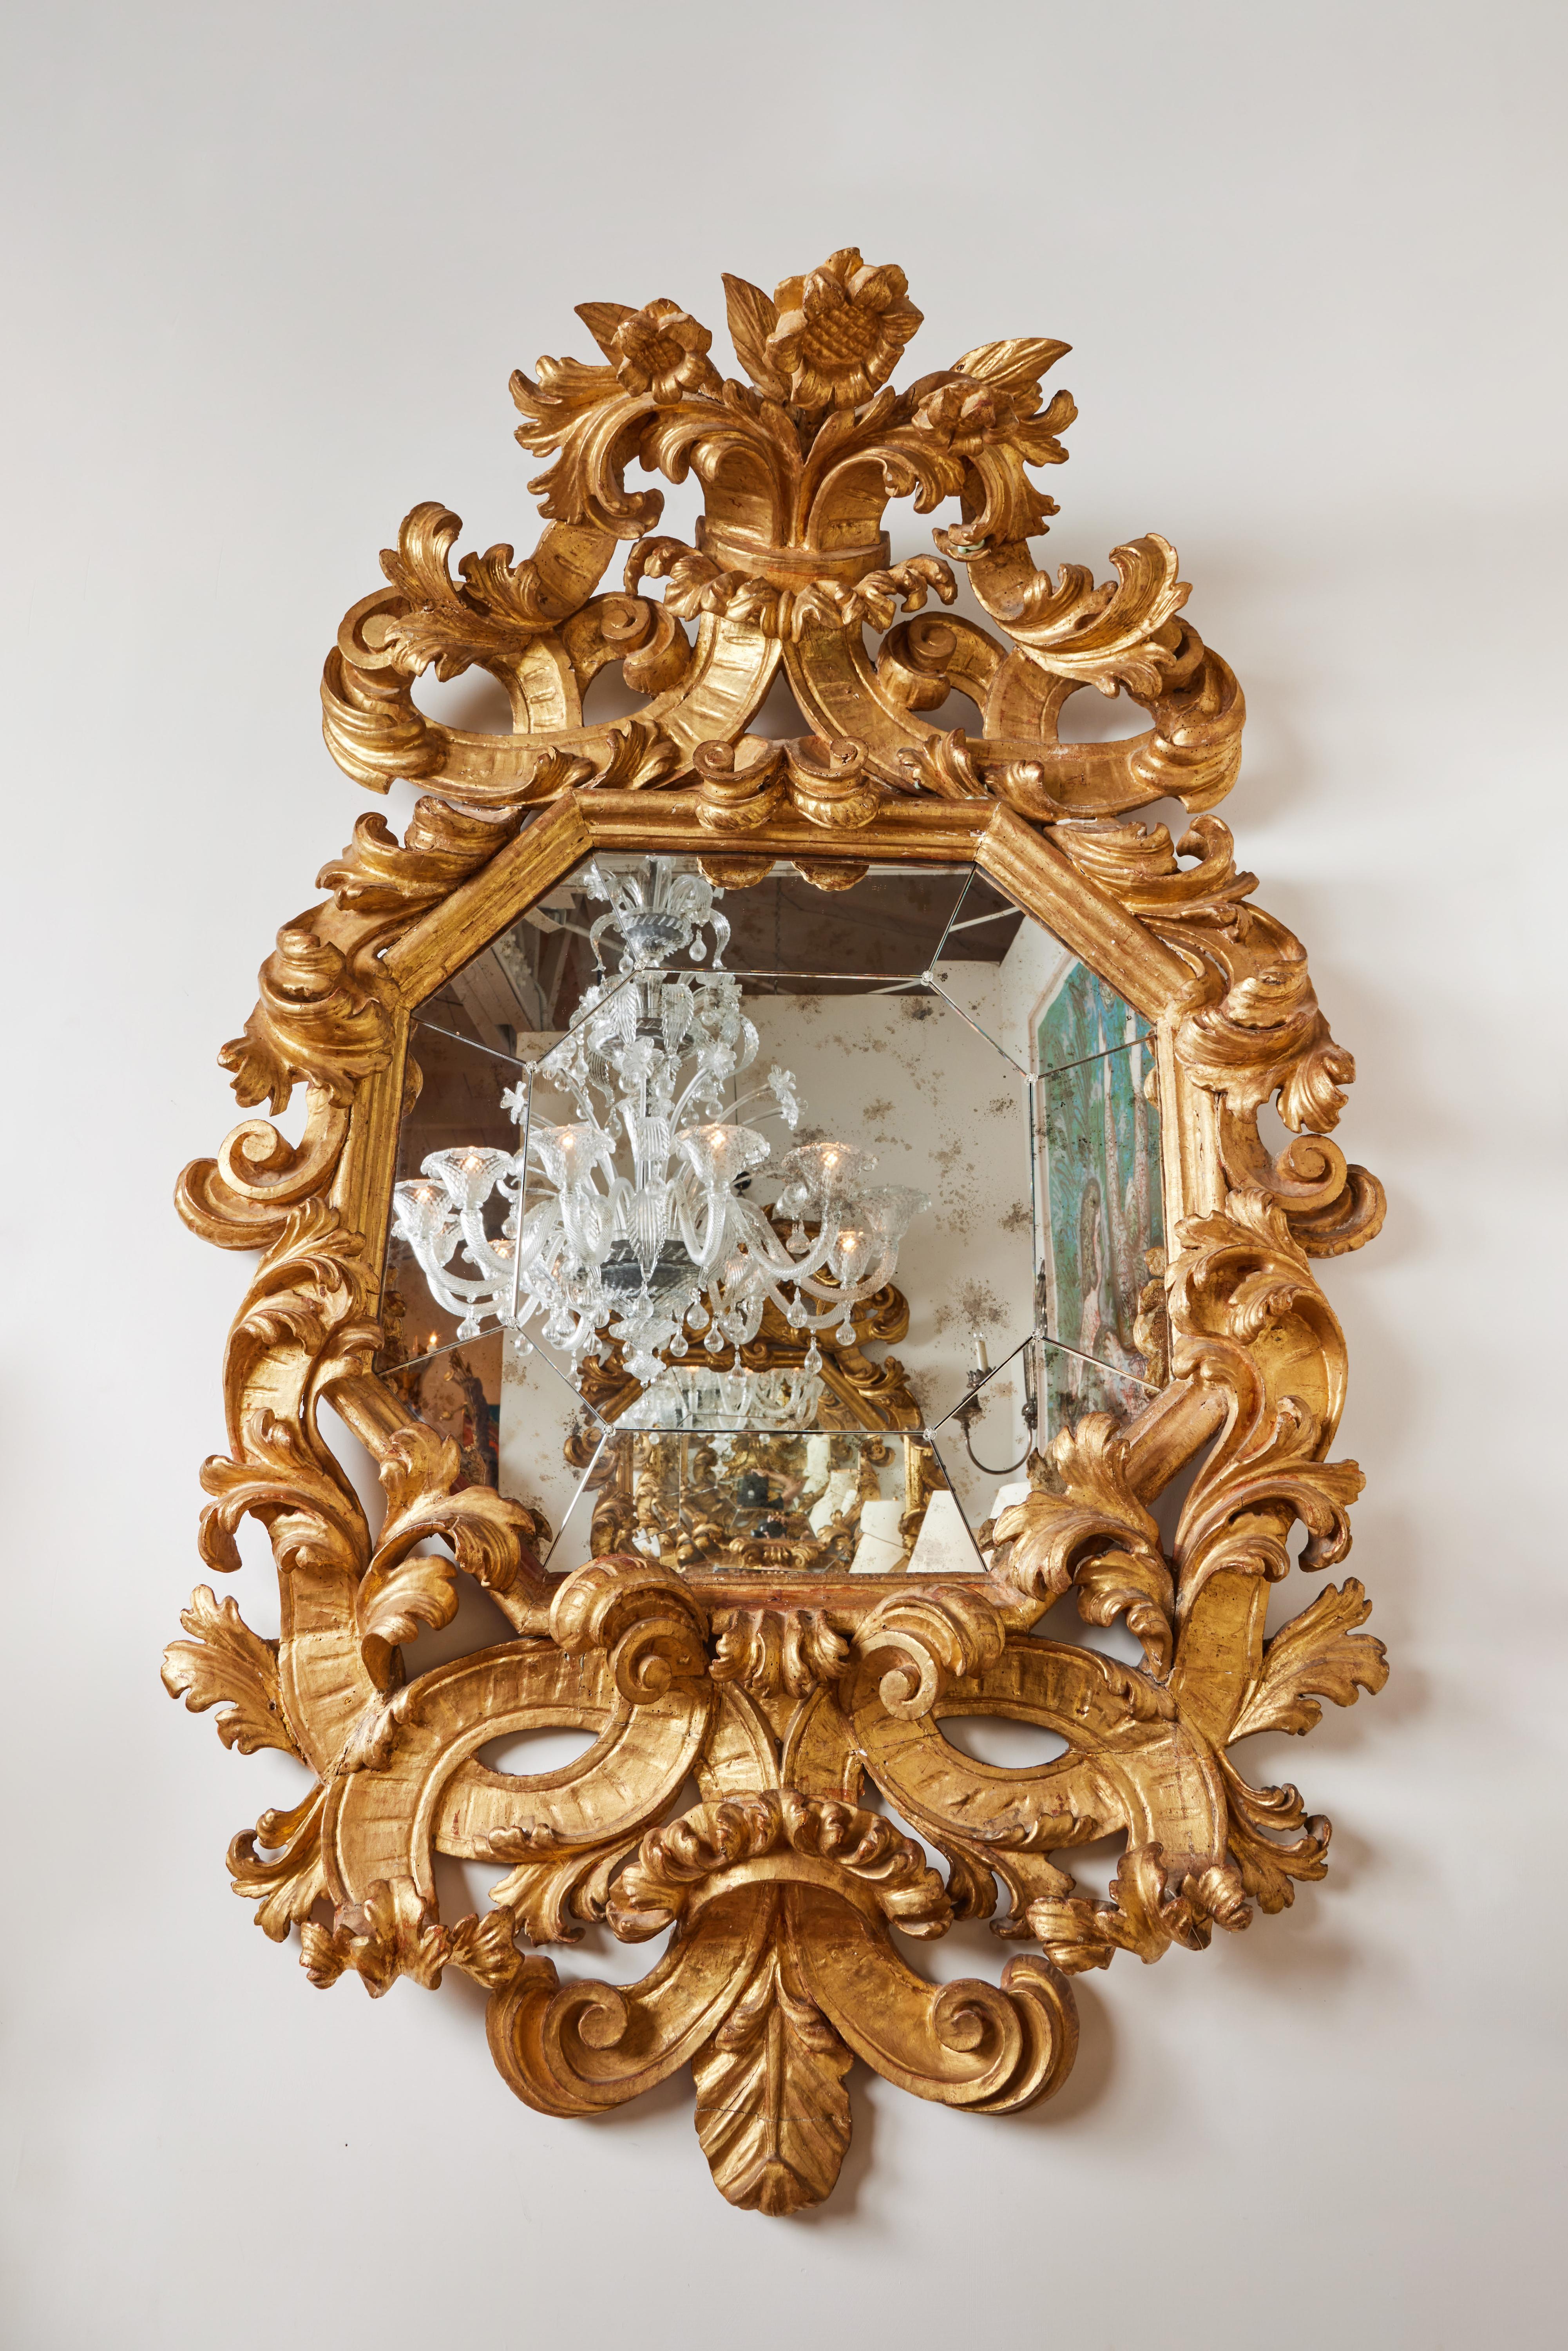 Dramatique paire de miroirs romains sculptés à la main et dorés à l'or fin 22 carats, avec miroir coupé séparément pour former un octogone. Miroir légèrement tacheté correspondant à l'âge.
 